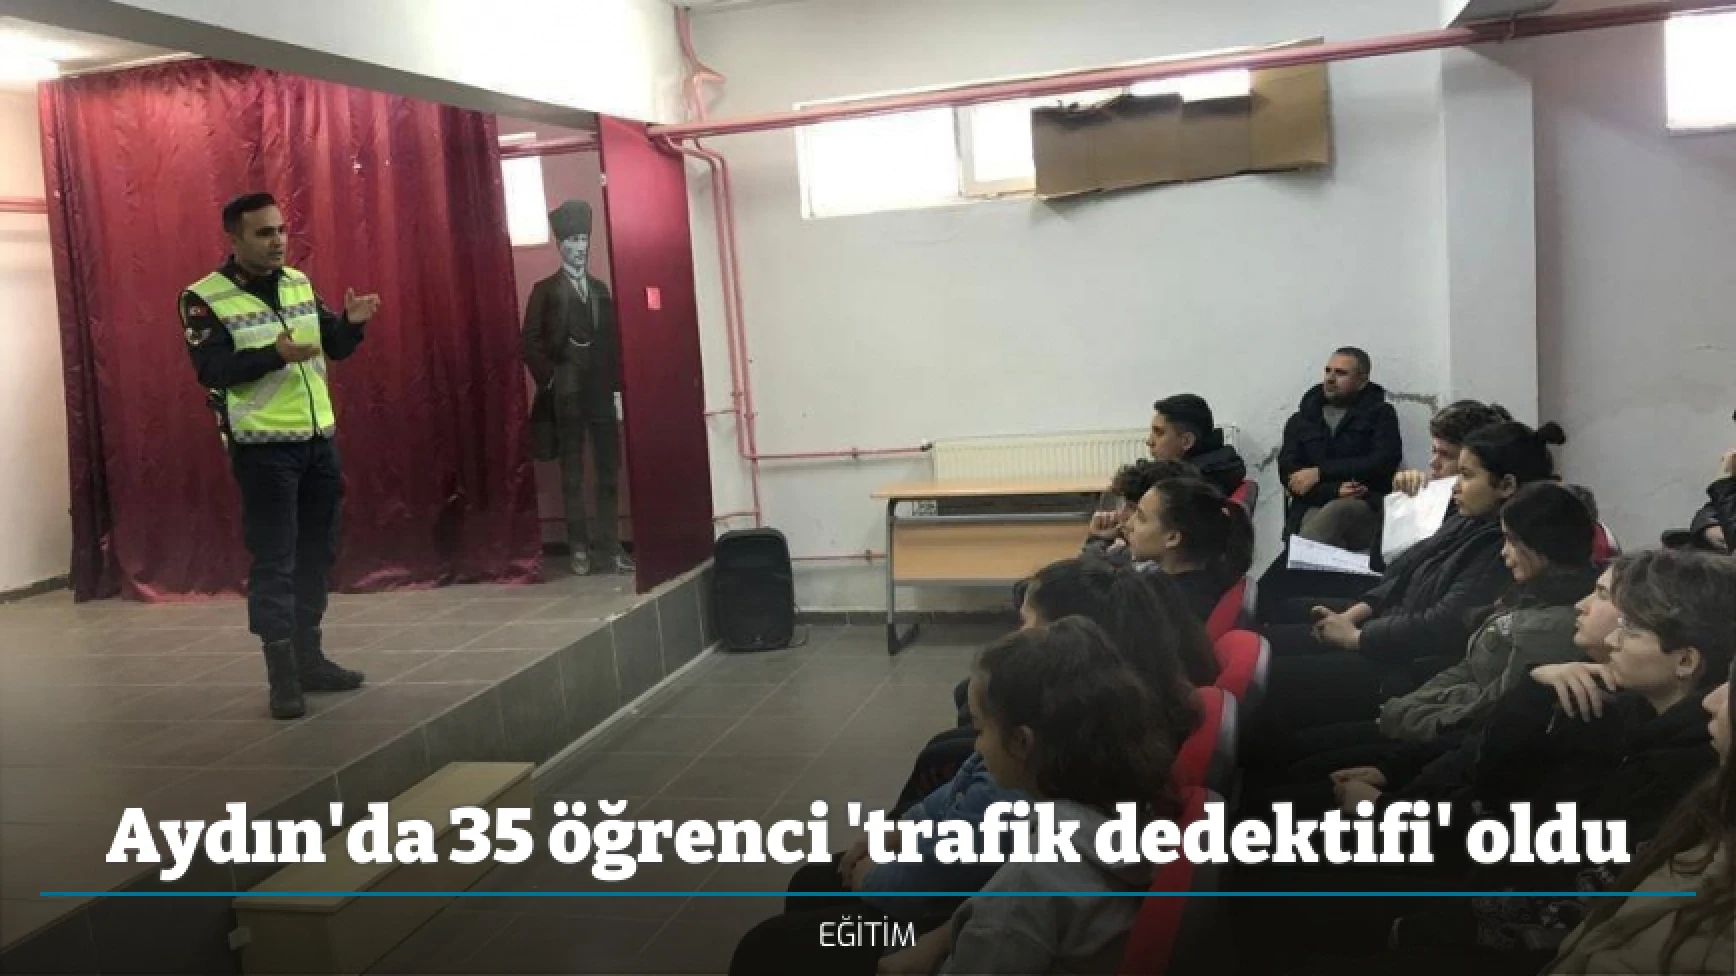 Aydın'da 35 öğrenci 'trafik dedektifi' oldu